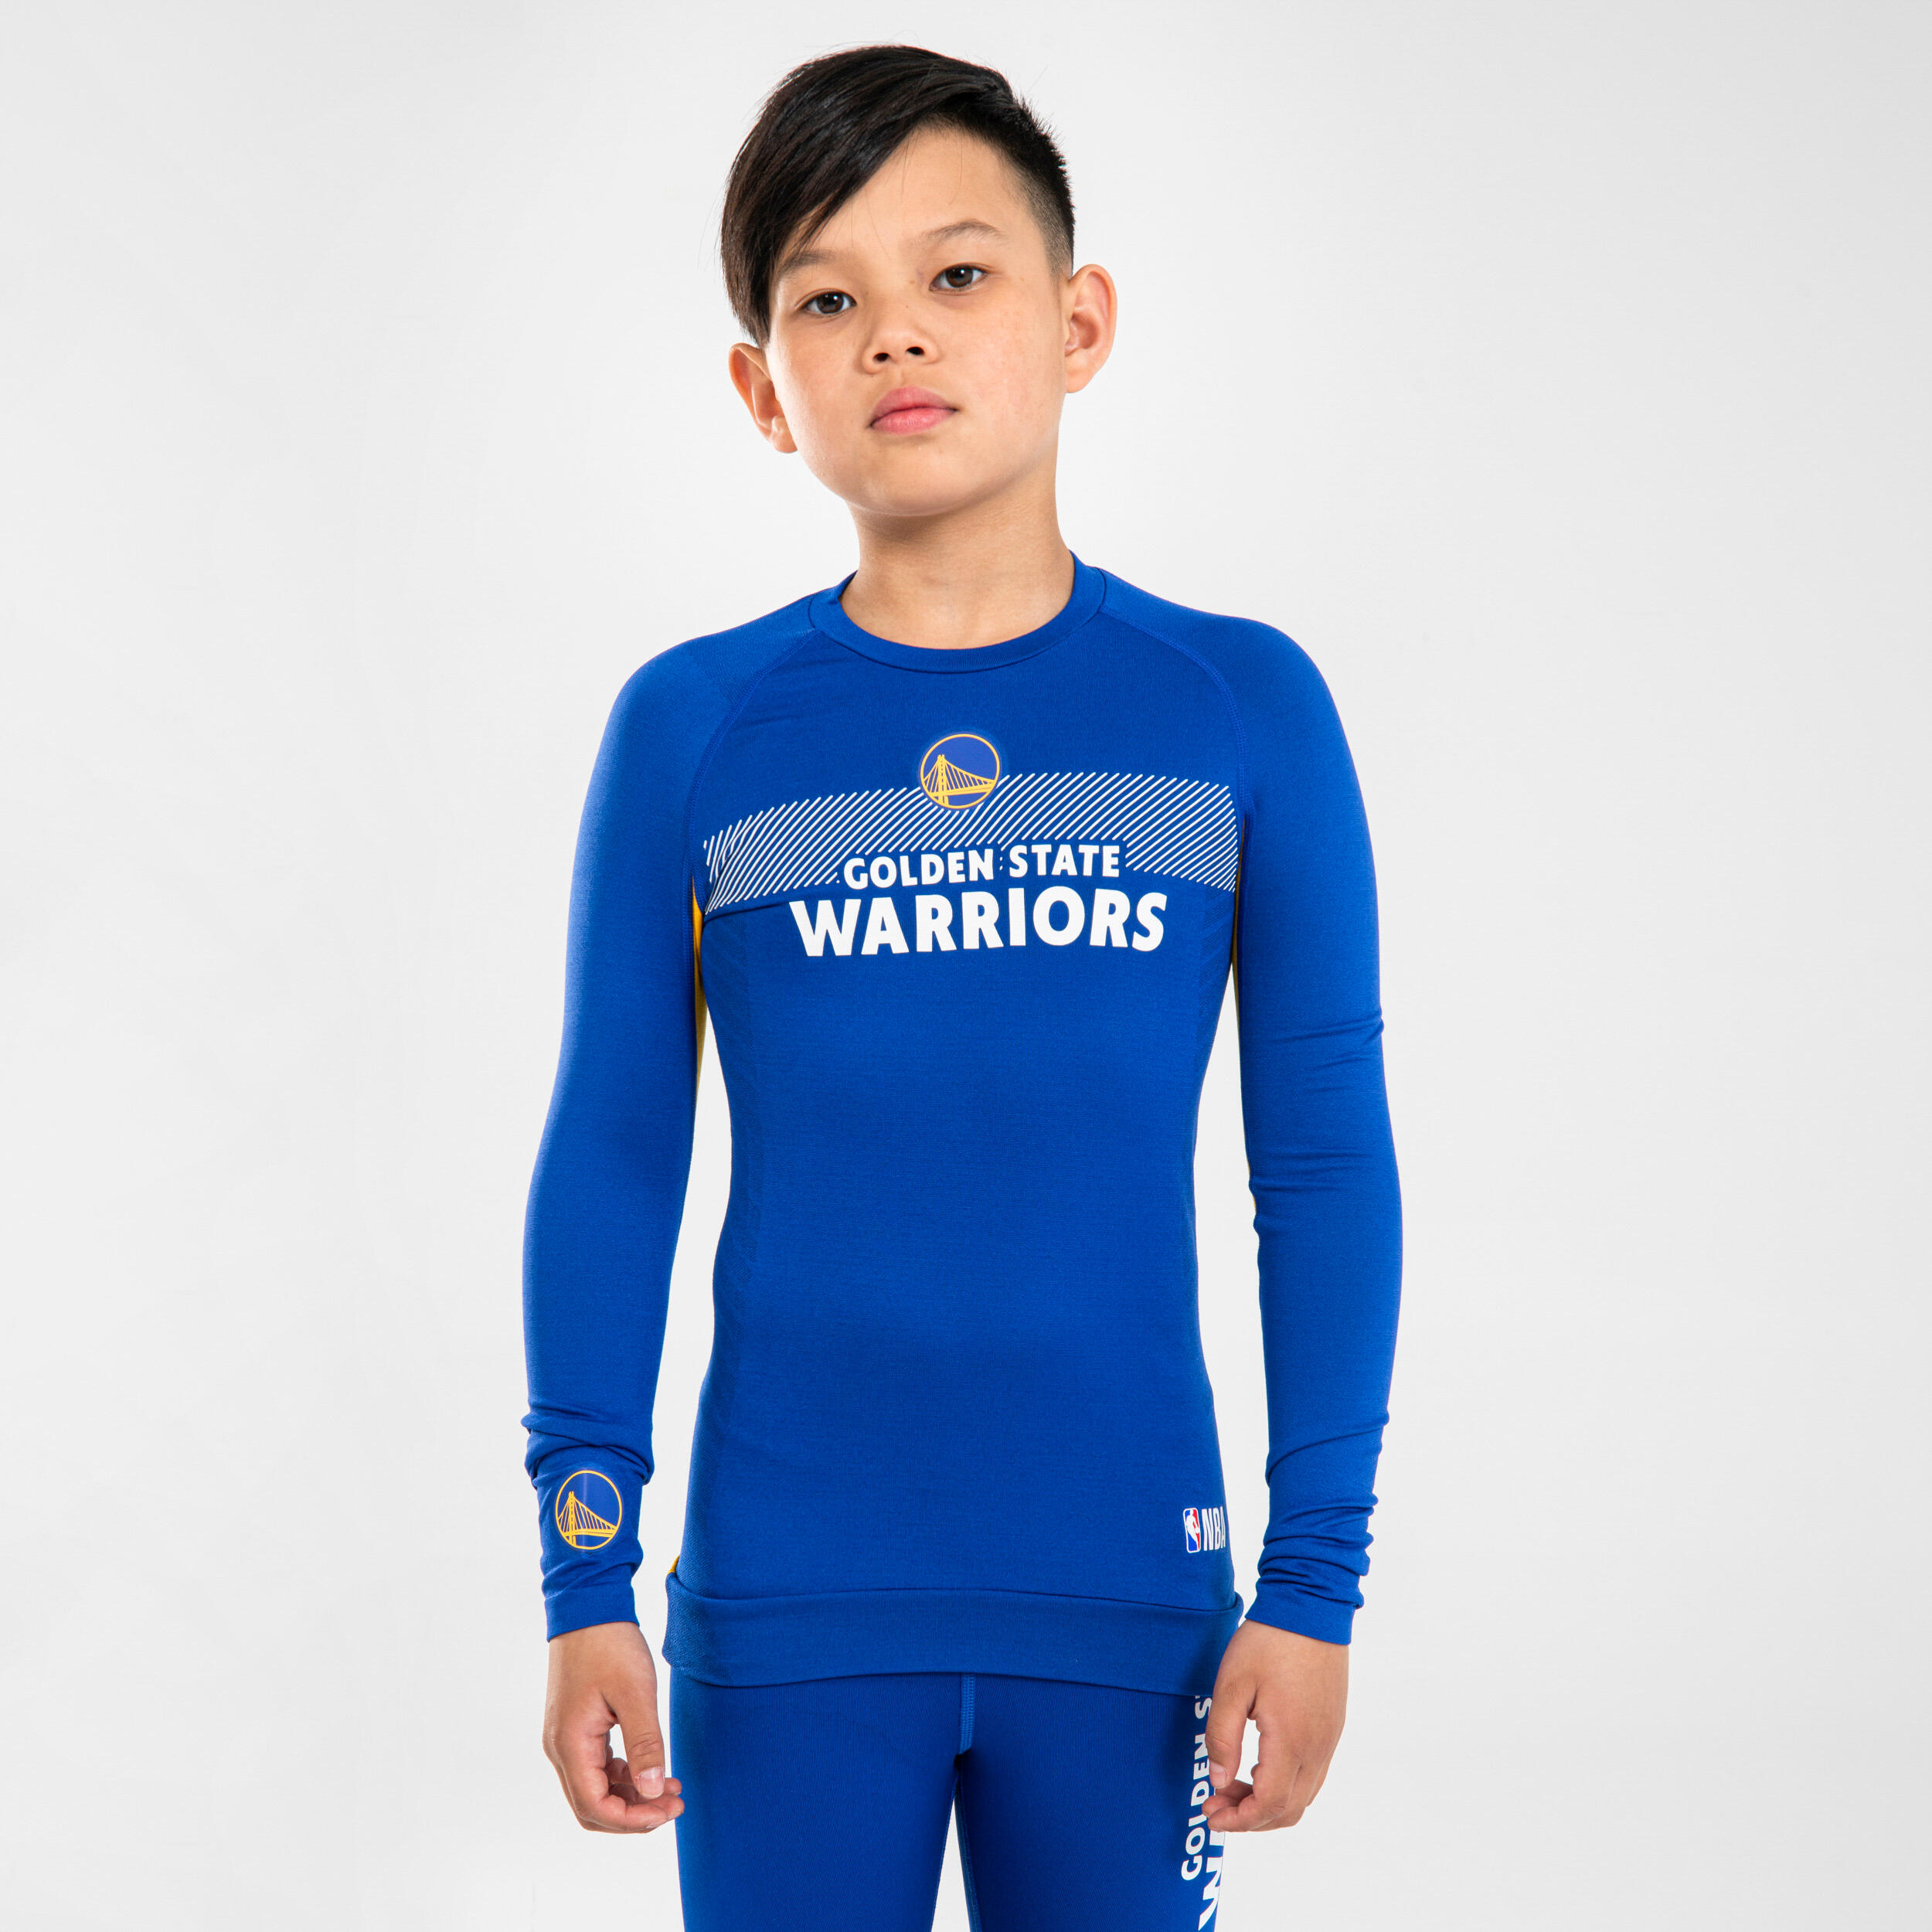 Kids' Basketball Base Layer Jersey UT500 - NBA Golden State Warriors/Blue 1/8